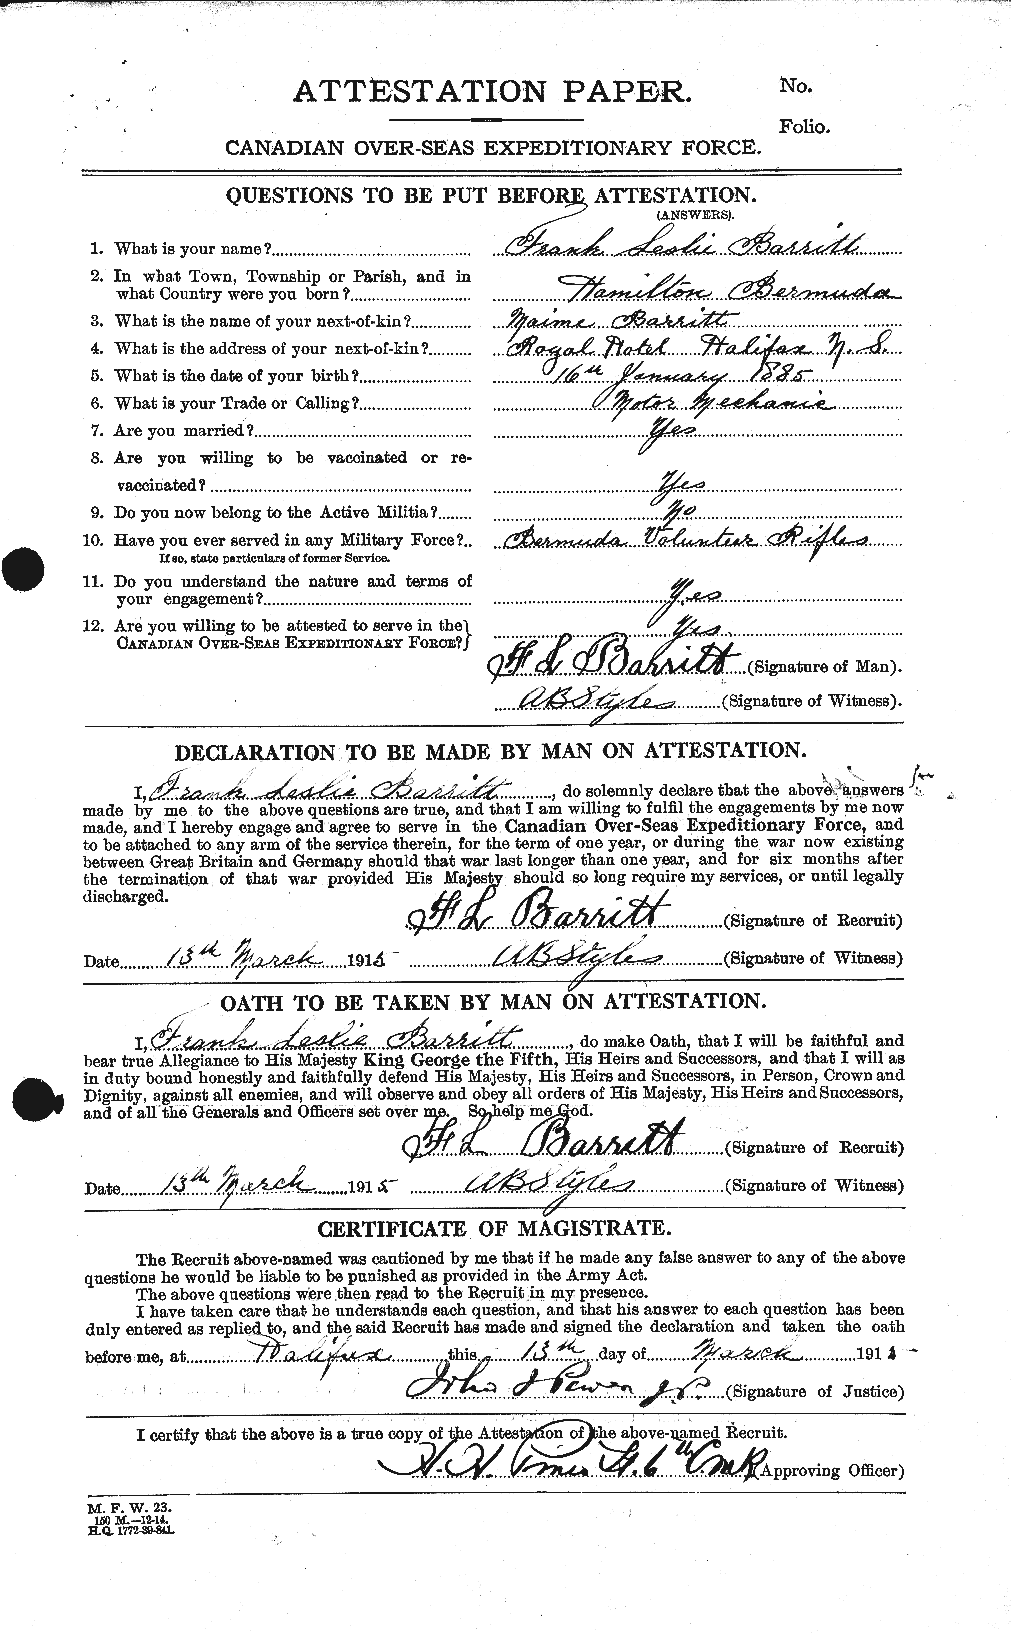 Dossiers du Personnel de la Première Guerre mondiale - CEC 219958a